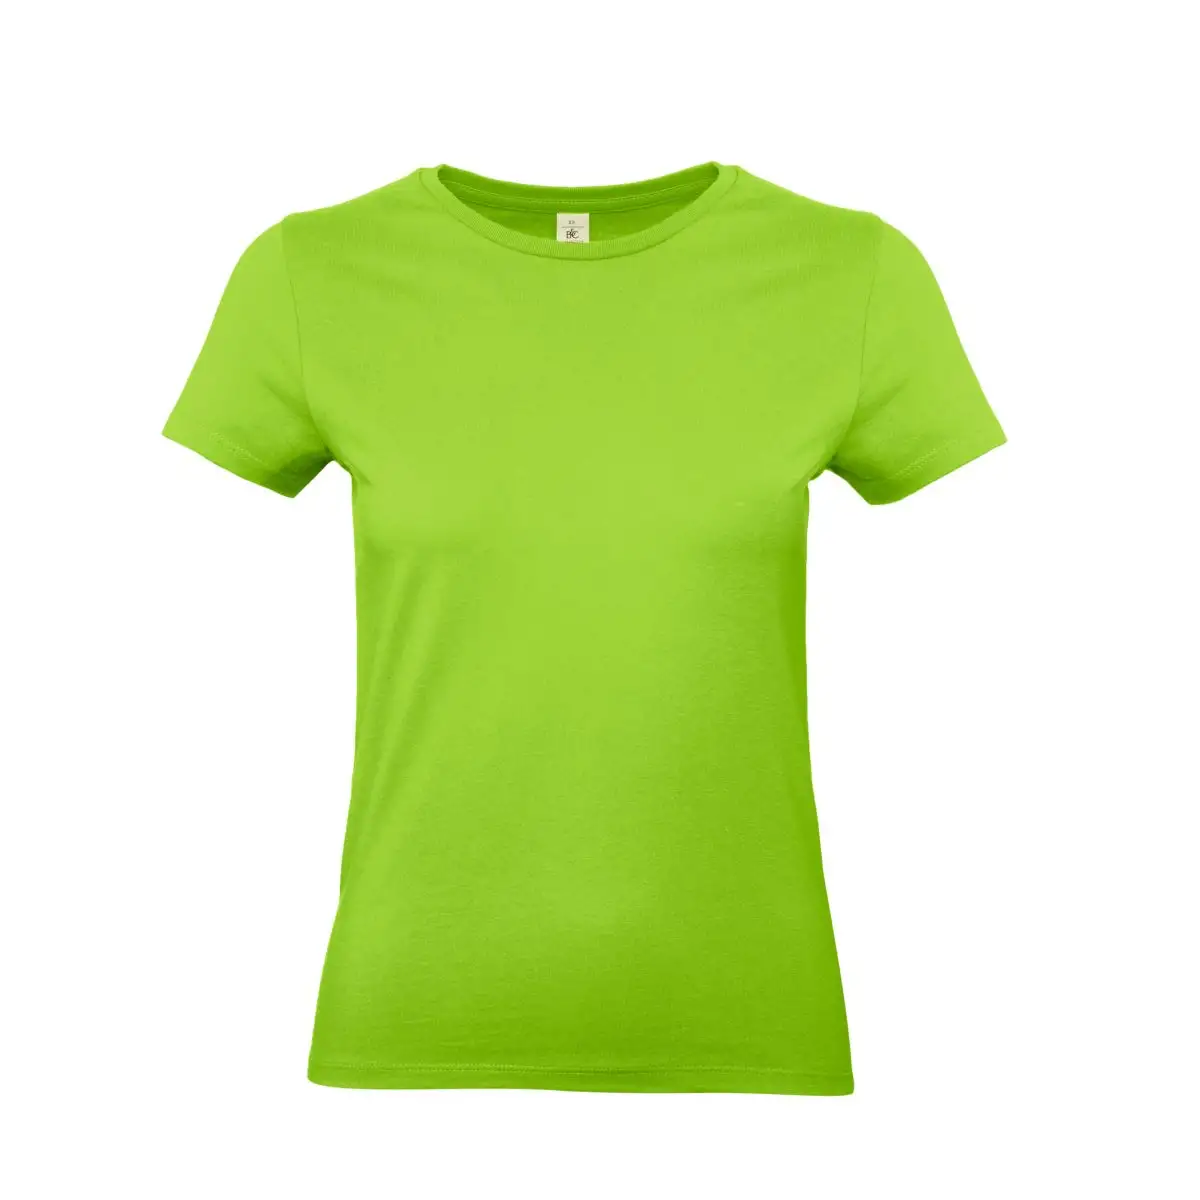 T-Shirt Donna Cotone Manica Corta Personalizzata - B&C Collection